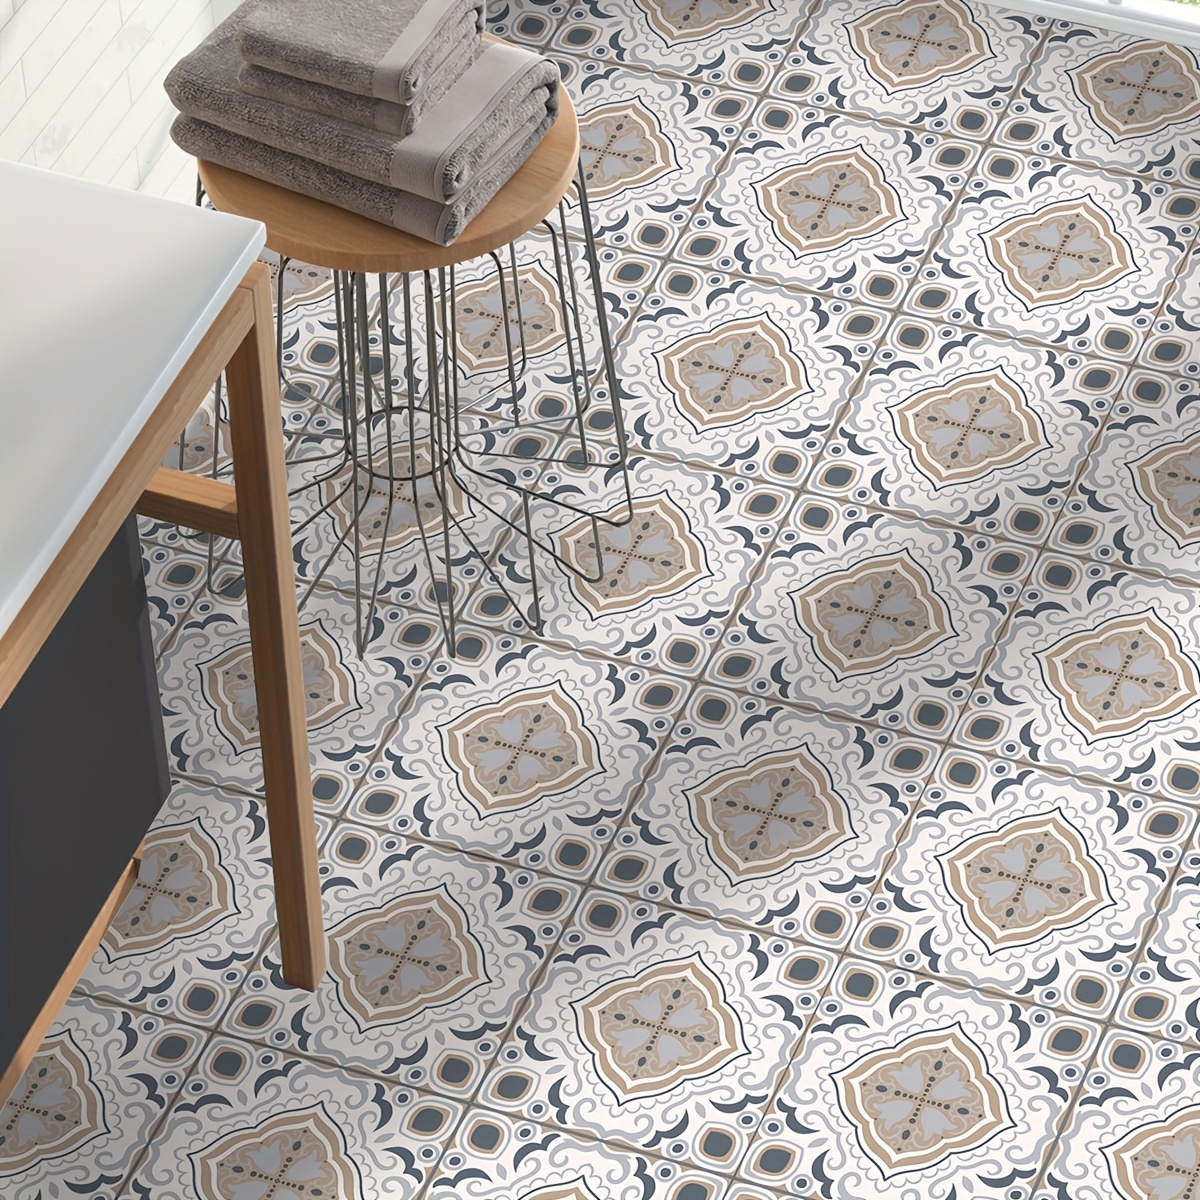 Kitchen Vinyl Floor Mat in Mediterranean Tile Pattern 